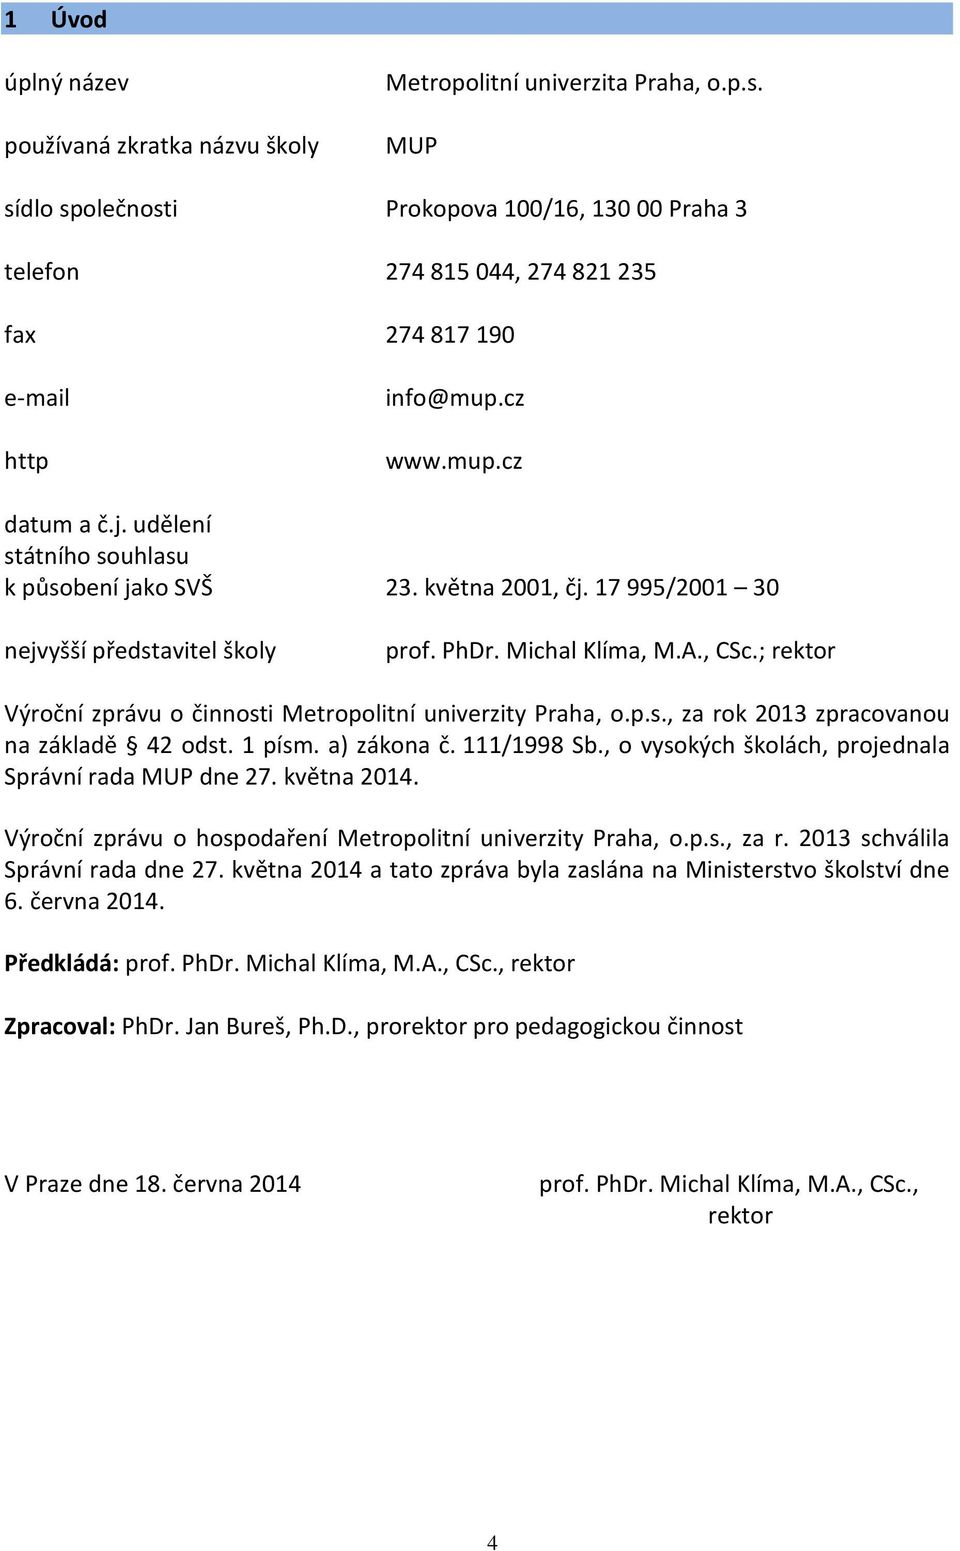 udělení státního souhlasu k působení jako SVŠ 23. května 2001, čj. 17 995/2001 30 nejvyšší představitel školy prof. PhDr. Michal Klíma, M.A., CSc.